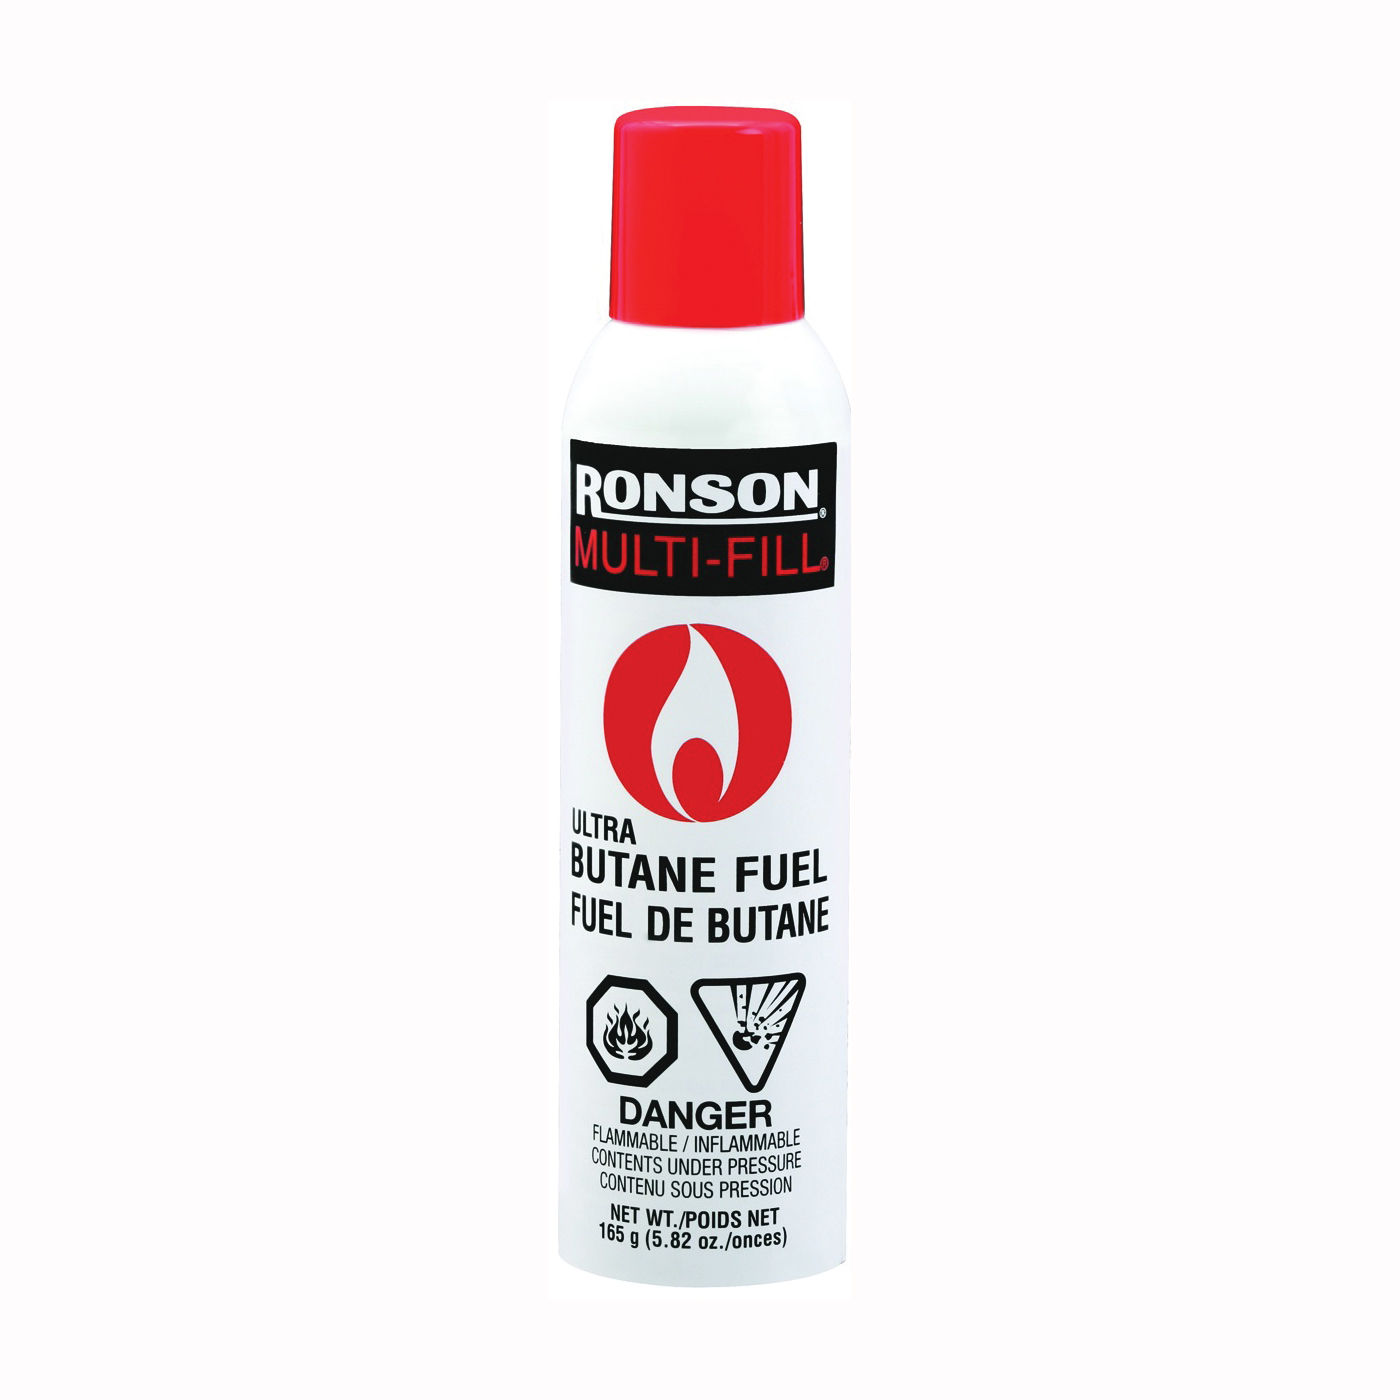 Ronson Multi-Fill 99148 Butane Fuel, 165 g Refill Pack - 1